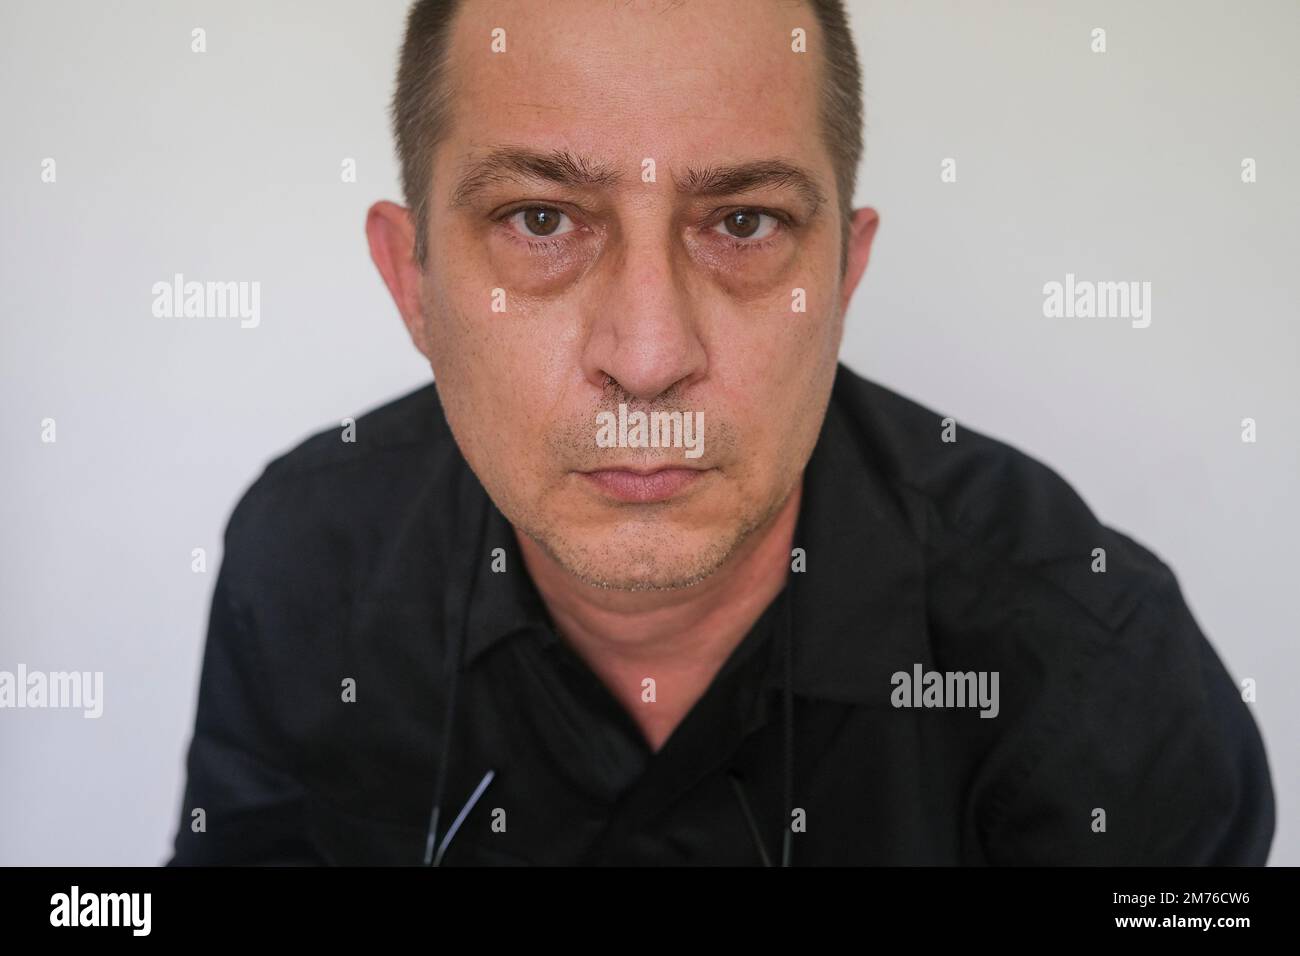 Primo piano ritratto di uomo caucasico con occhi baggy guardando la macchina fotografica, contro lo sfondo bianco borse occhi Foto Stock